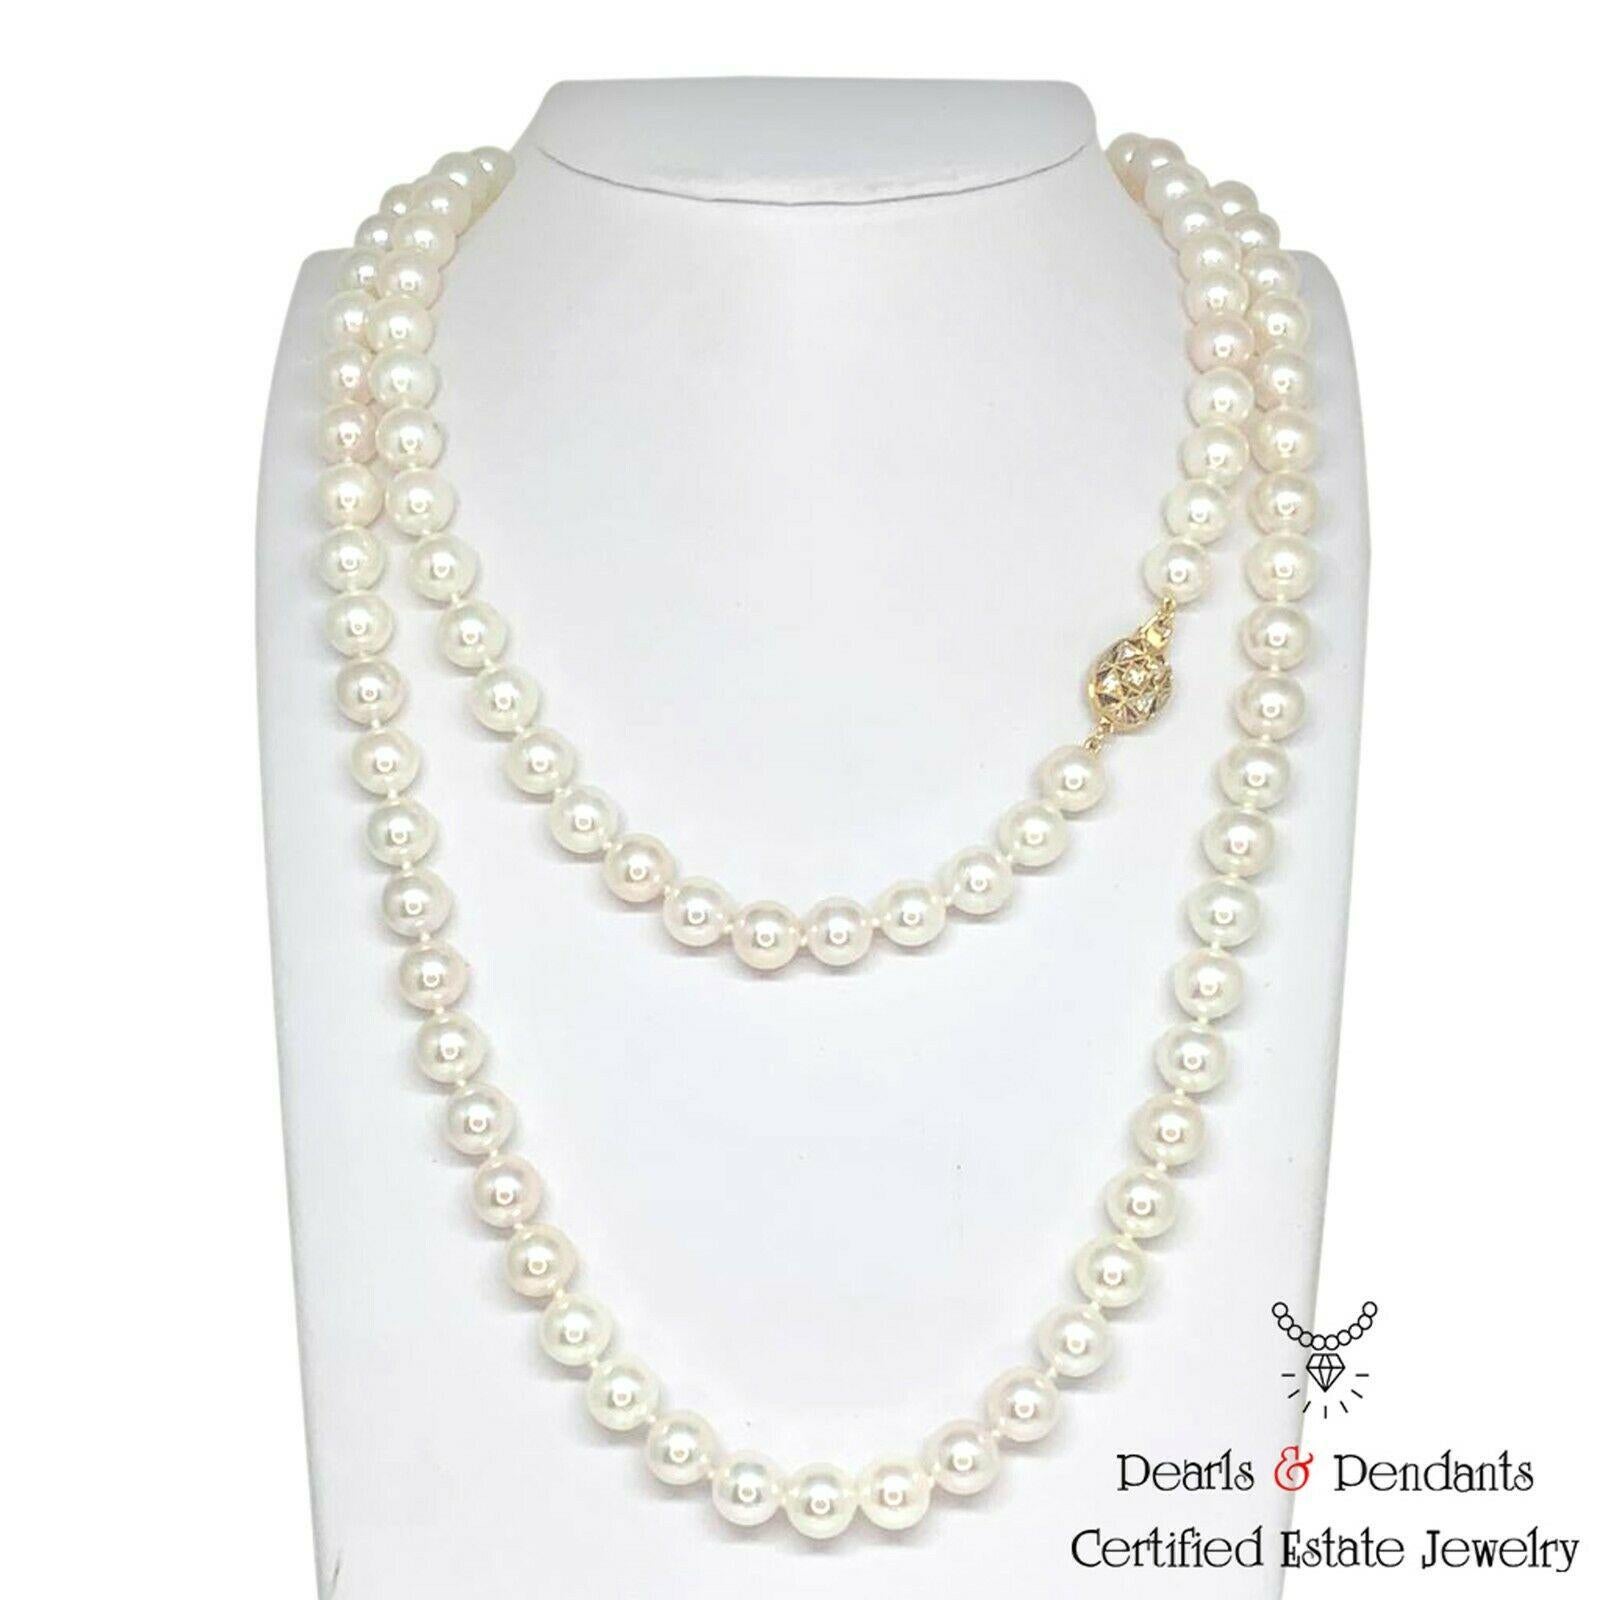 Feine Qualität Akoya Perle Diamant Halskette 14k Gold 8,5 mm 36 in zertifiziert $9.750 010932

Dies ist ein einzigartiges, maßgeschneidertes, glamouröses Schmuckstück!

Nichts sagt mehr 